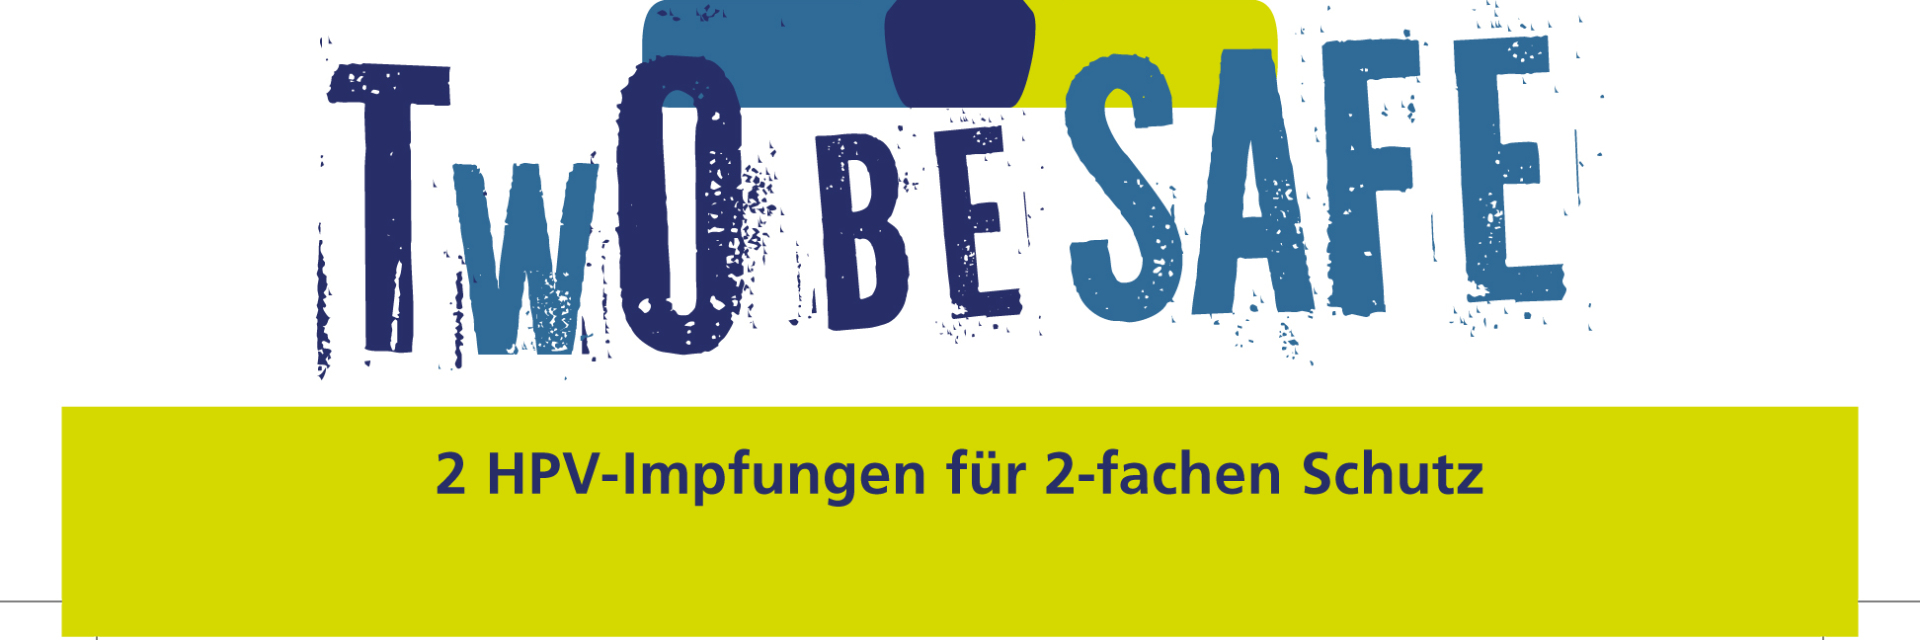 Aktionswoche zur HPV-Impfung in Niedersachsen, Postkarte